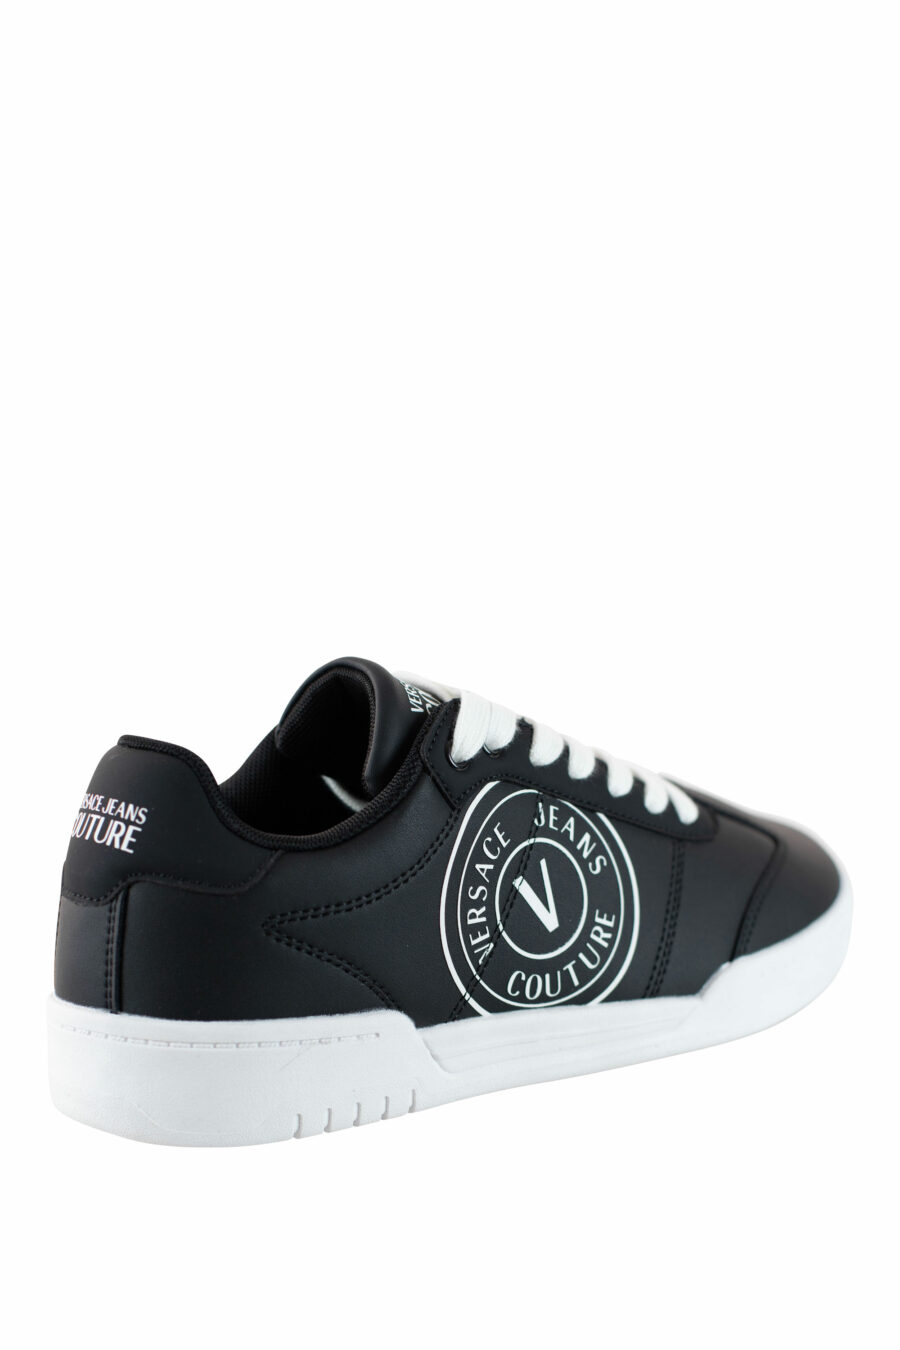 Zapatillas negras con logo circular y cordones blancos - IMG 4509